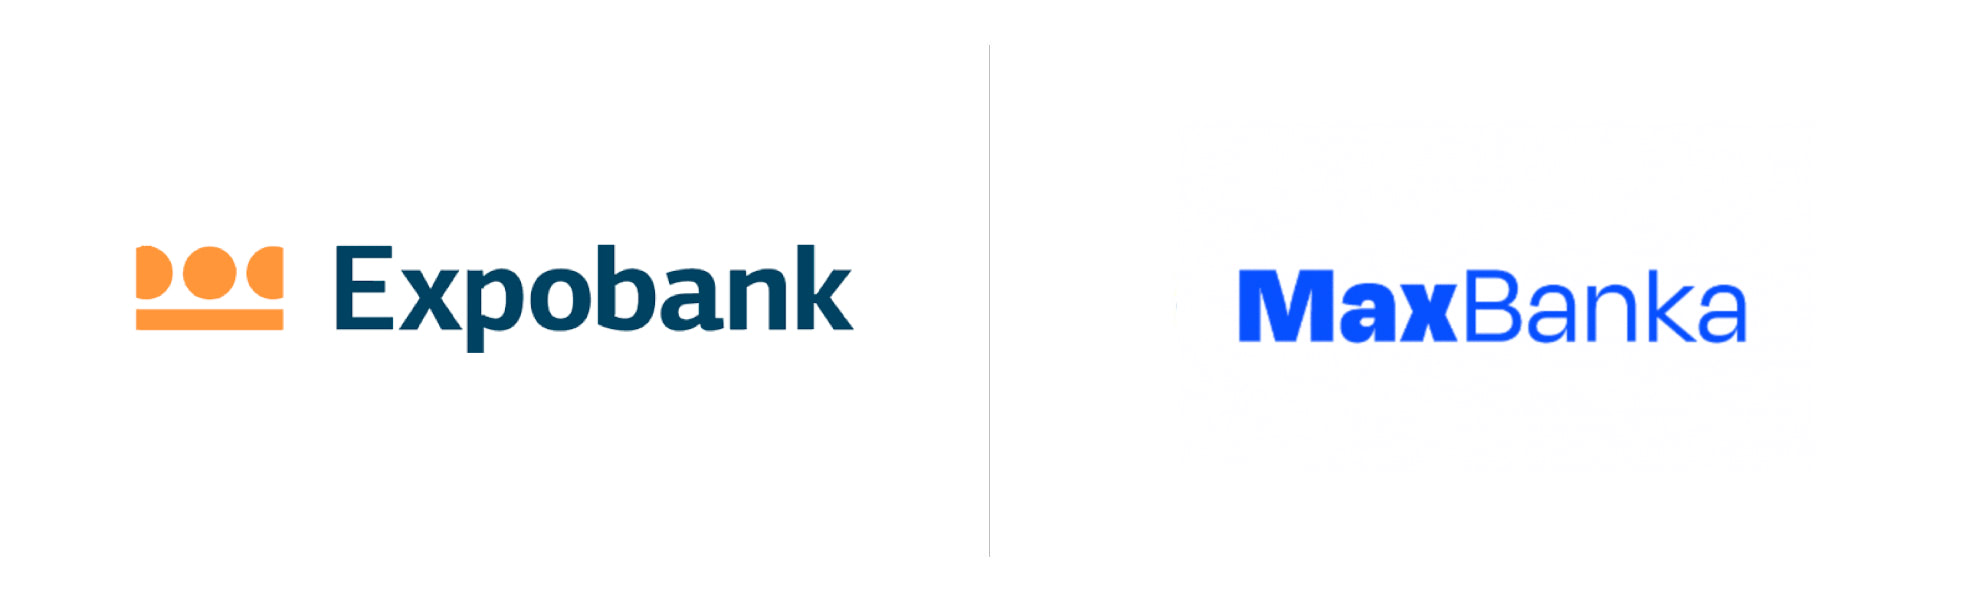 Expobank CZ zmienił nazwę na Max banka – znaki banków